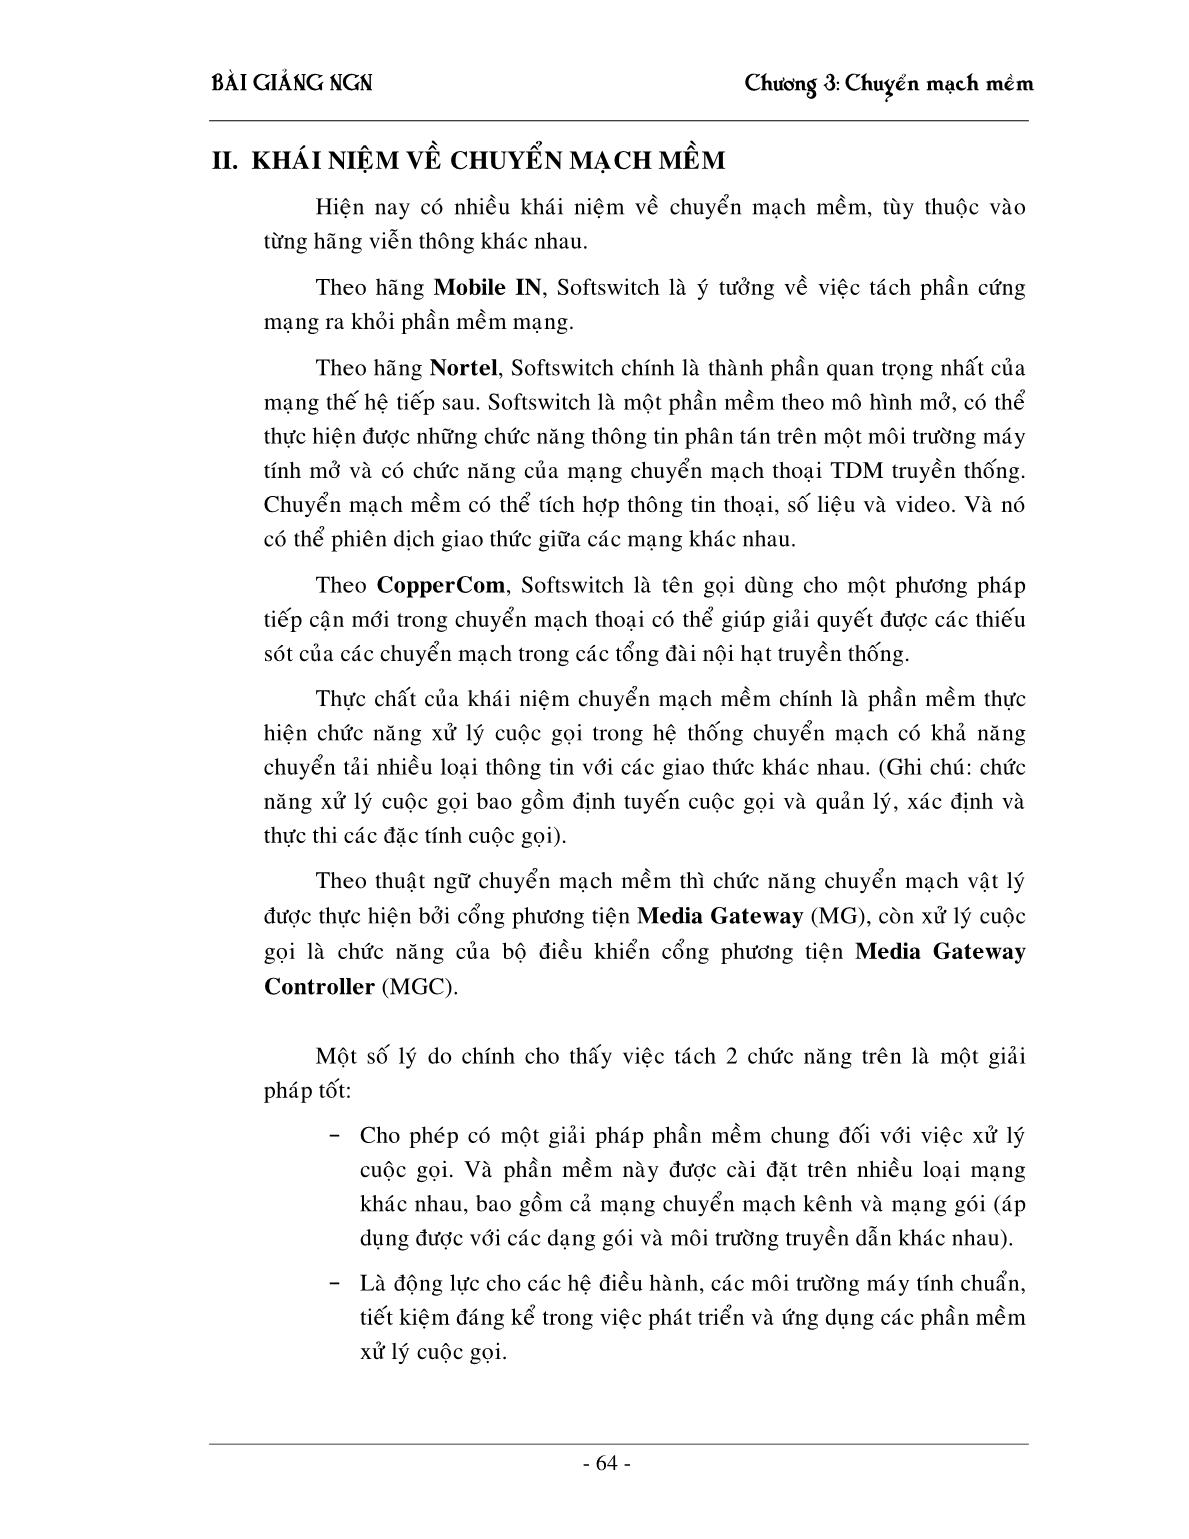 Bài giảng NGN - Chương 3: Chuyển mạch mềm Softswitching trang 6